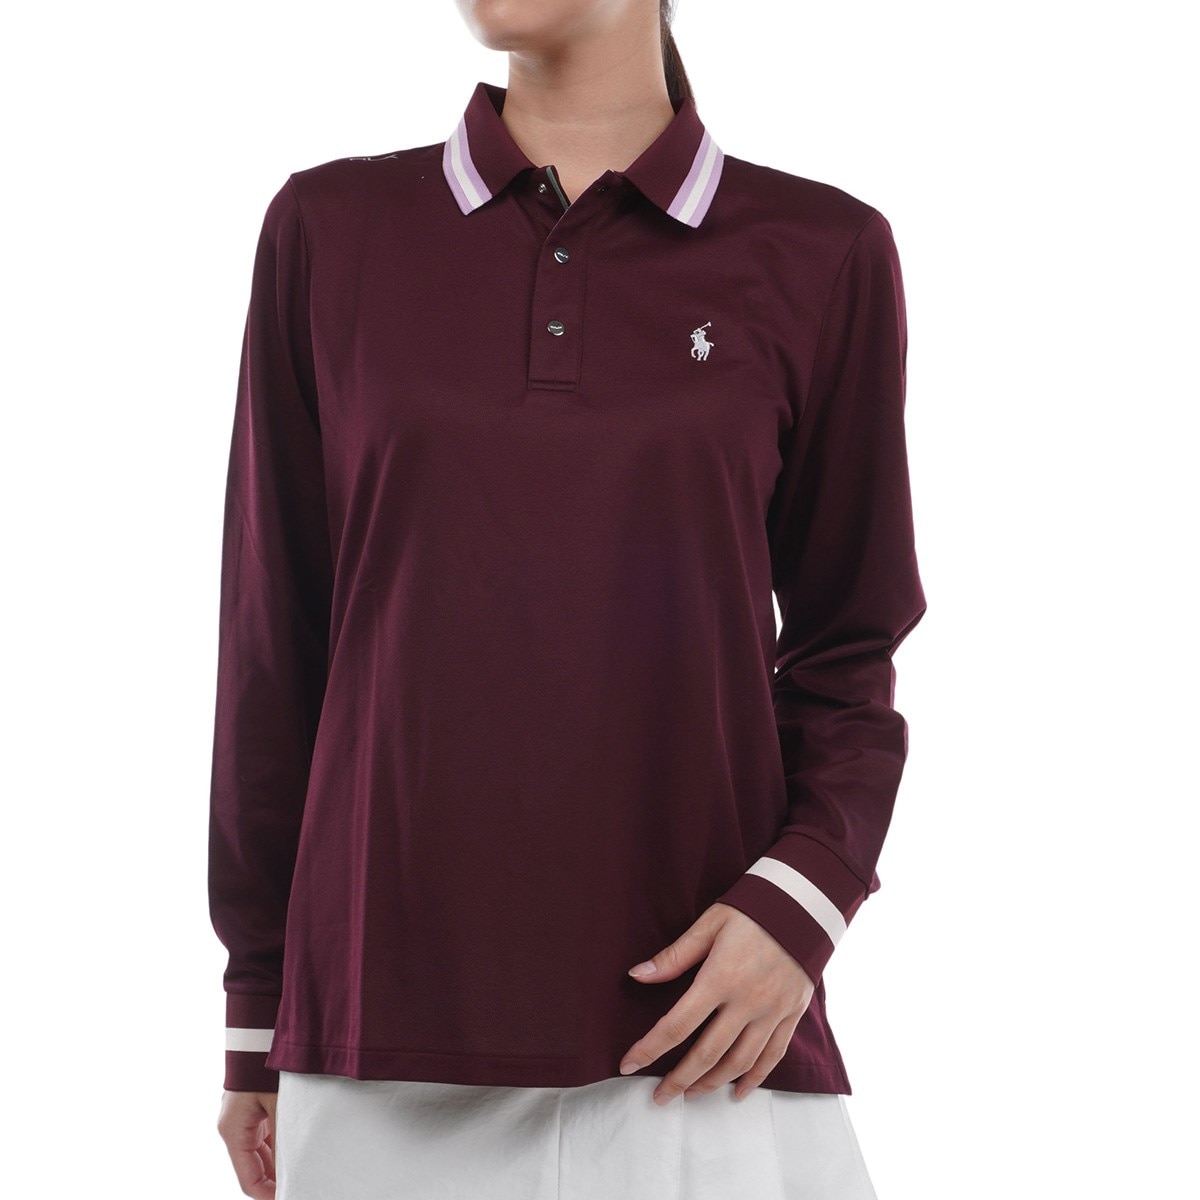 【新品正規品】 RLX ラルフローレン ポロシャツ 全米オープンゴルフ